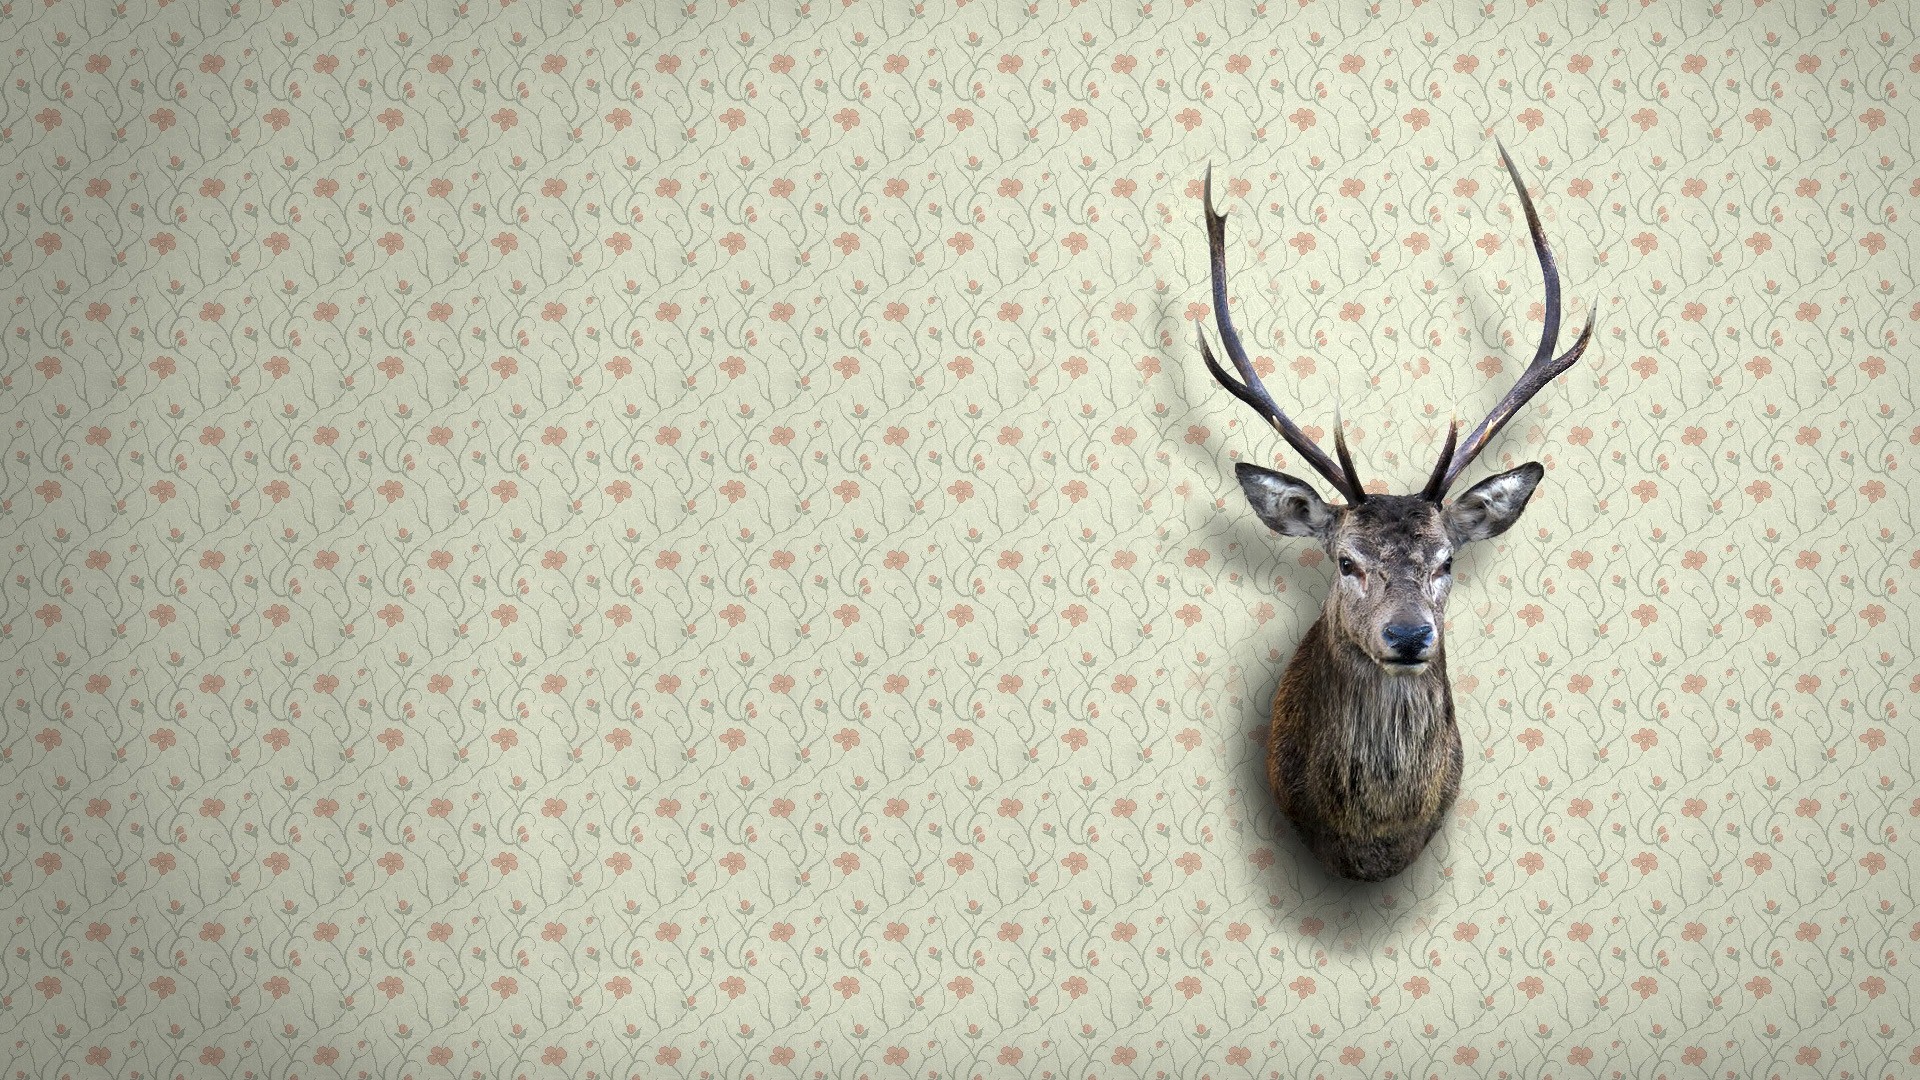 Deer Face On Wall Creative Wallpaper - Deer Face On Wall - HD Wallpaper 